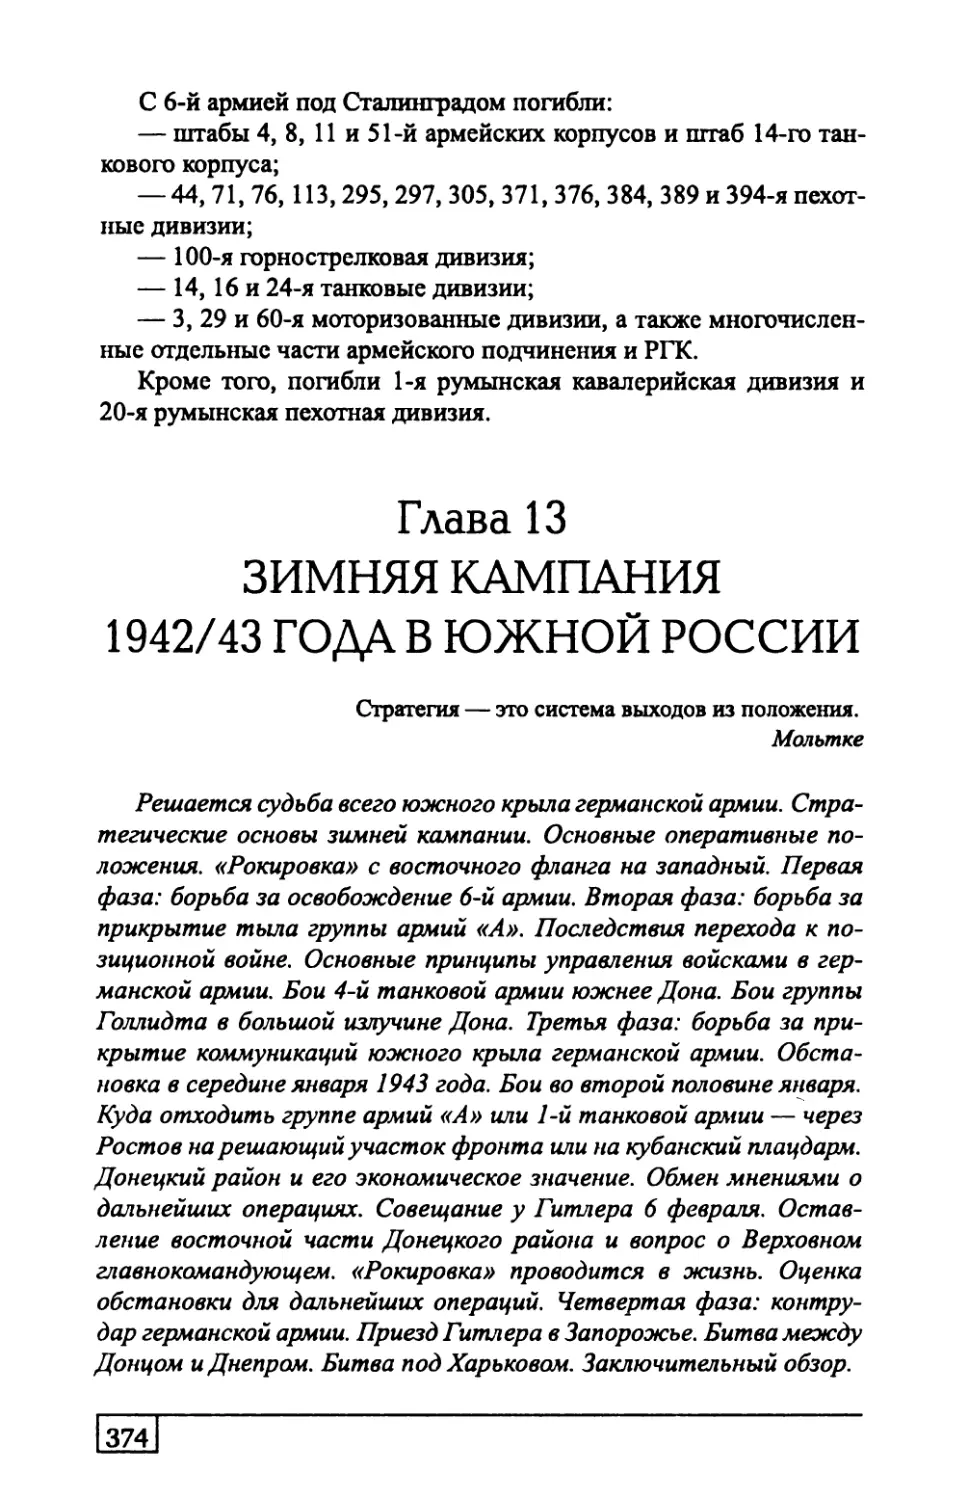 Глава  13.  ЗИМНЯЯ  КАМПАНИЯ  1942/43  ГОДА В  ЮЖНОЙ  РОССИИ